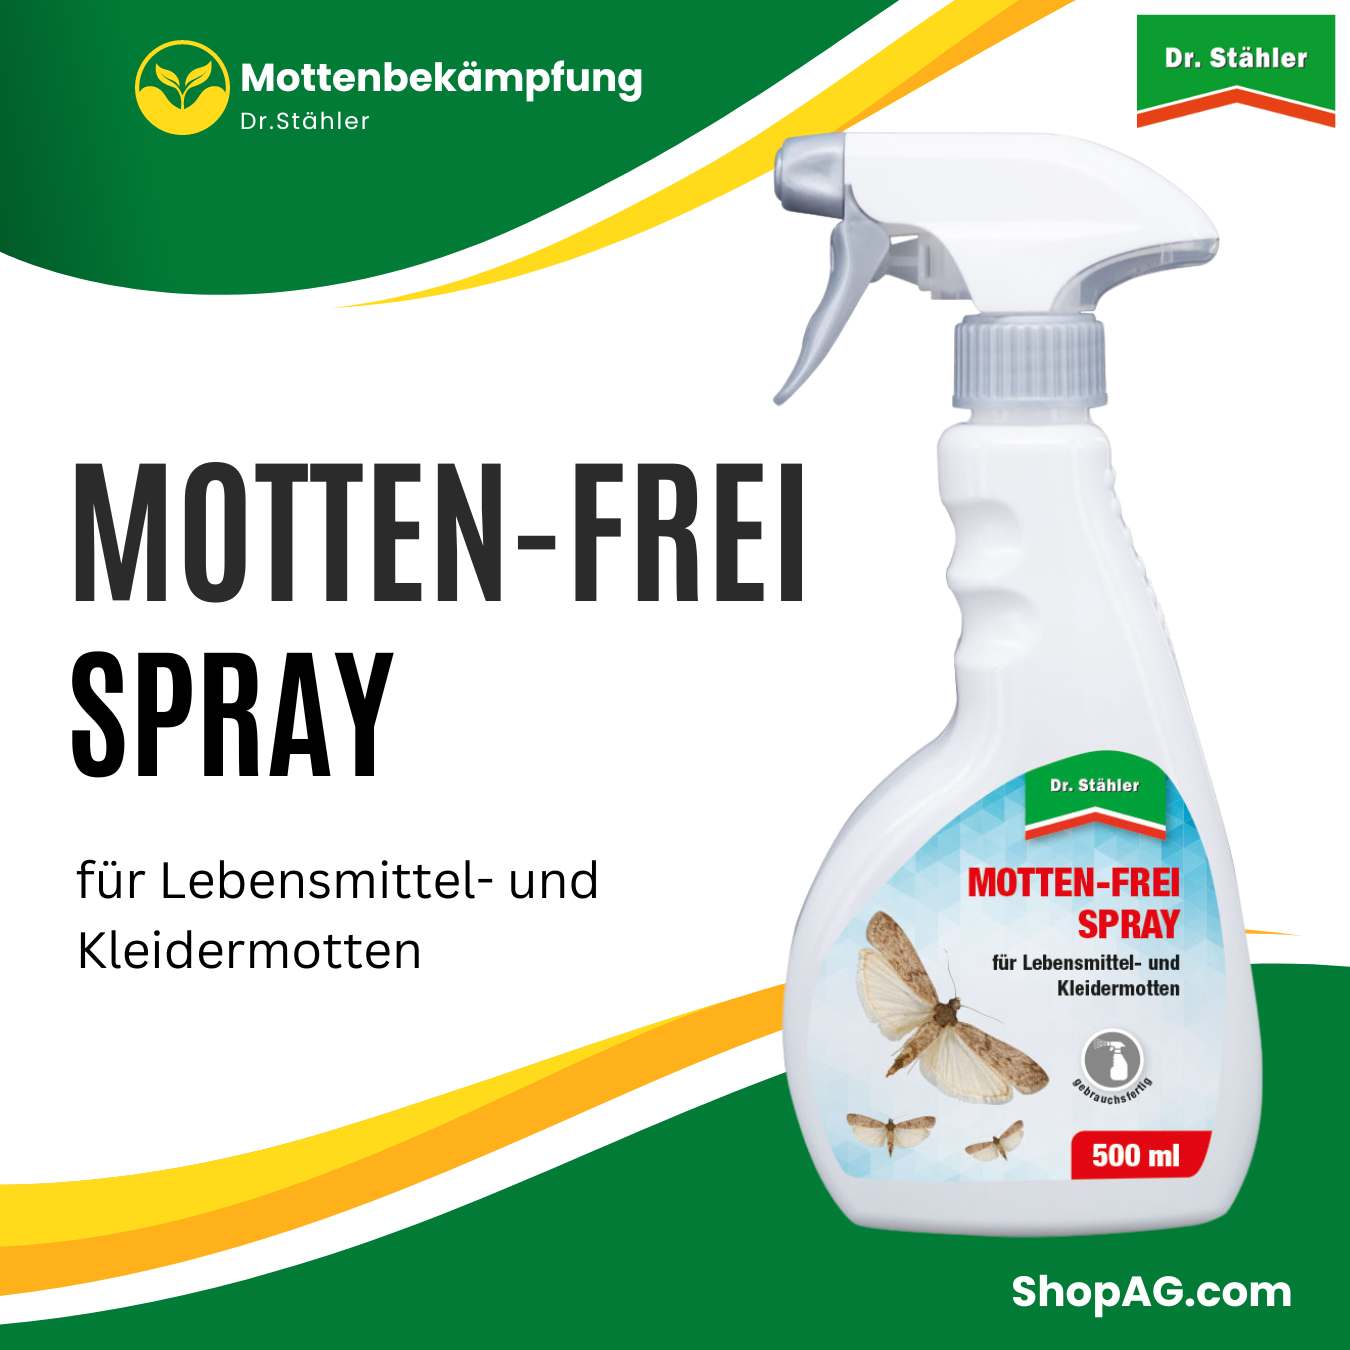 Motten-Frei Spray 500 ml gegen Lebensmittel und Kleidermotten Dr. Stähler